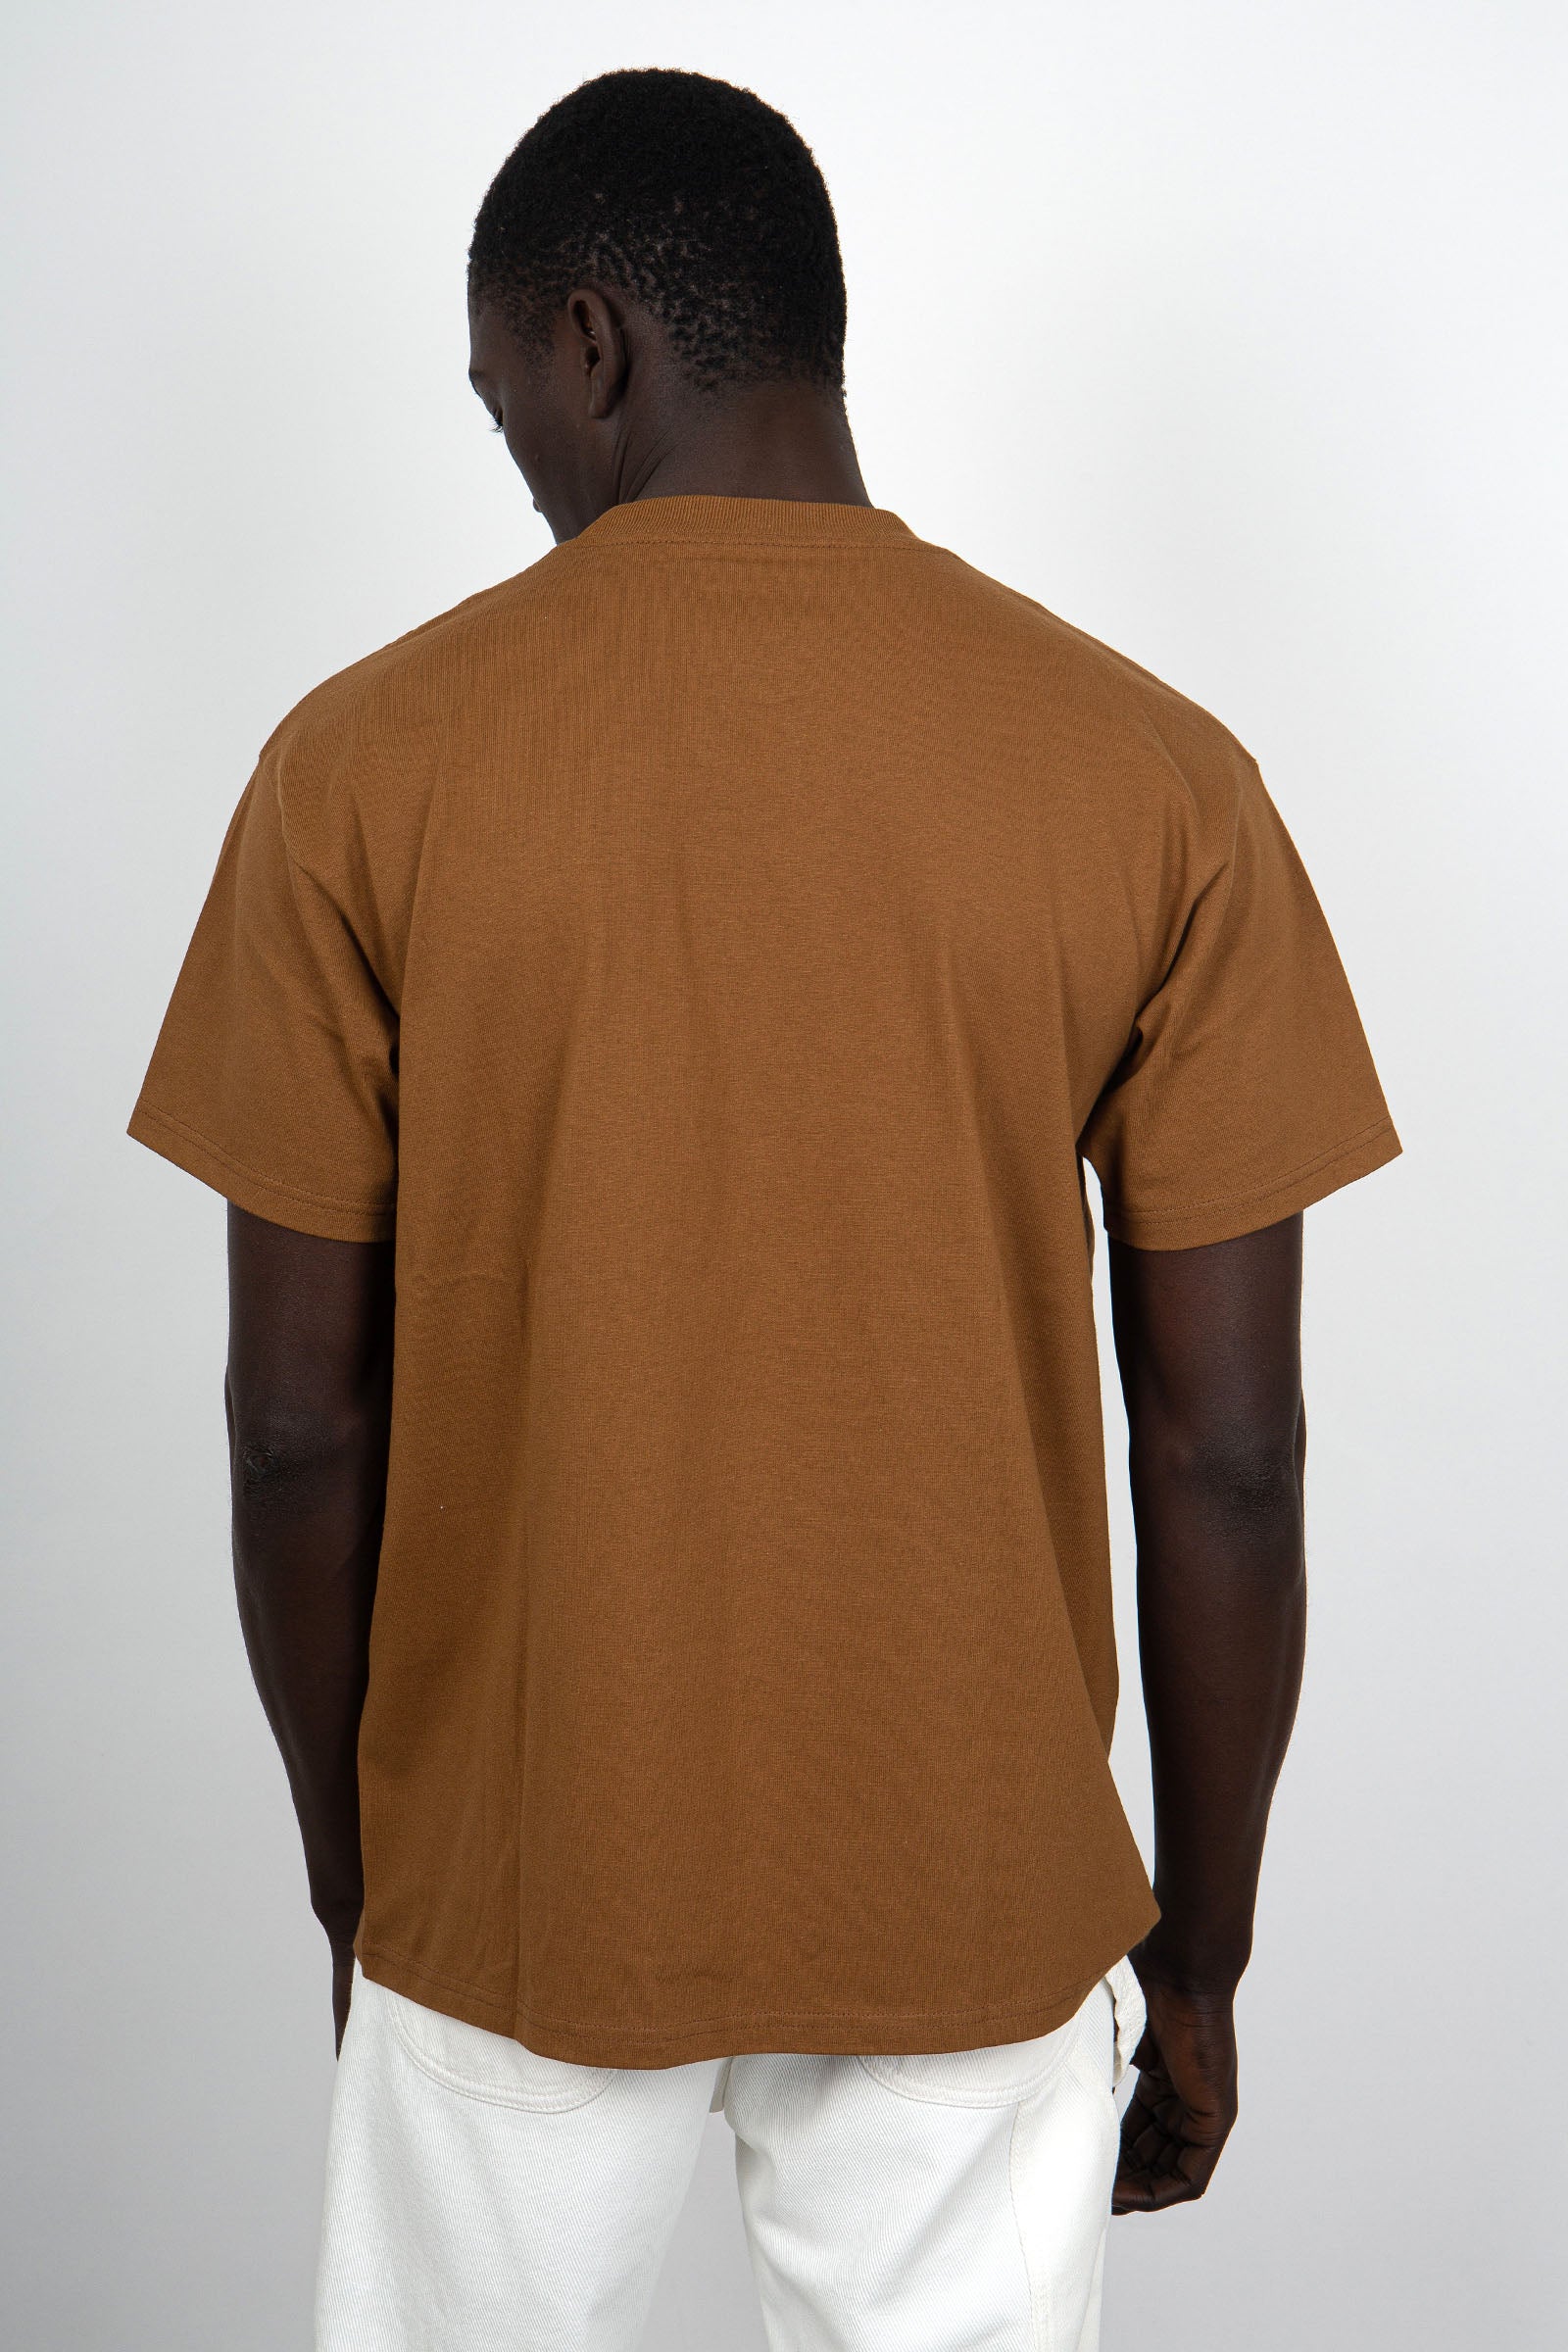 Carhartt WIP Short Sleeve Field Pocket Cotton Brown T-Shirt - 4